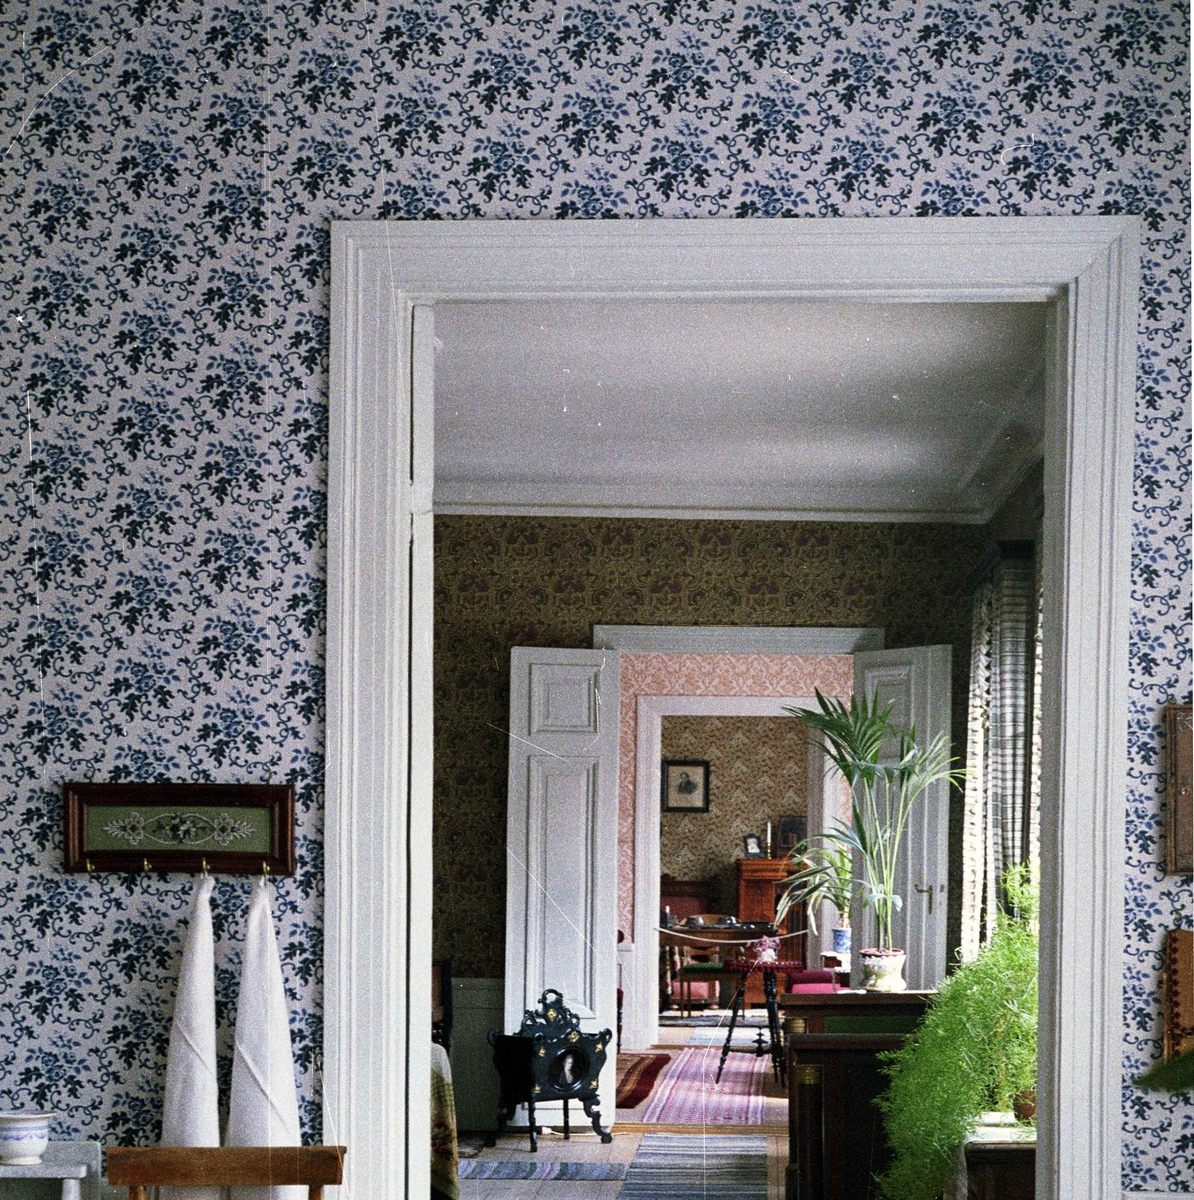 Interiör i Walmstedtska gården, salen, kvarteret Karin, Uppsala 1990